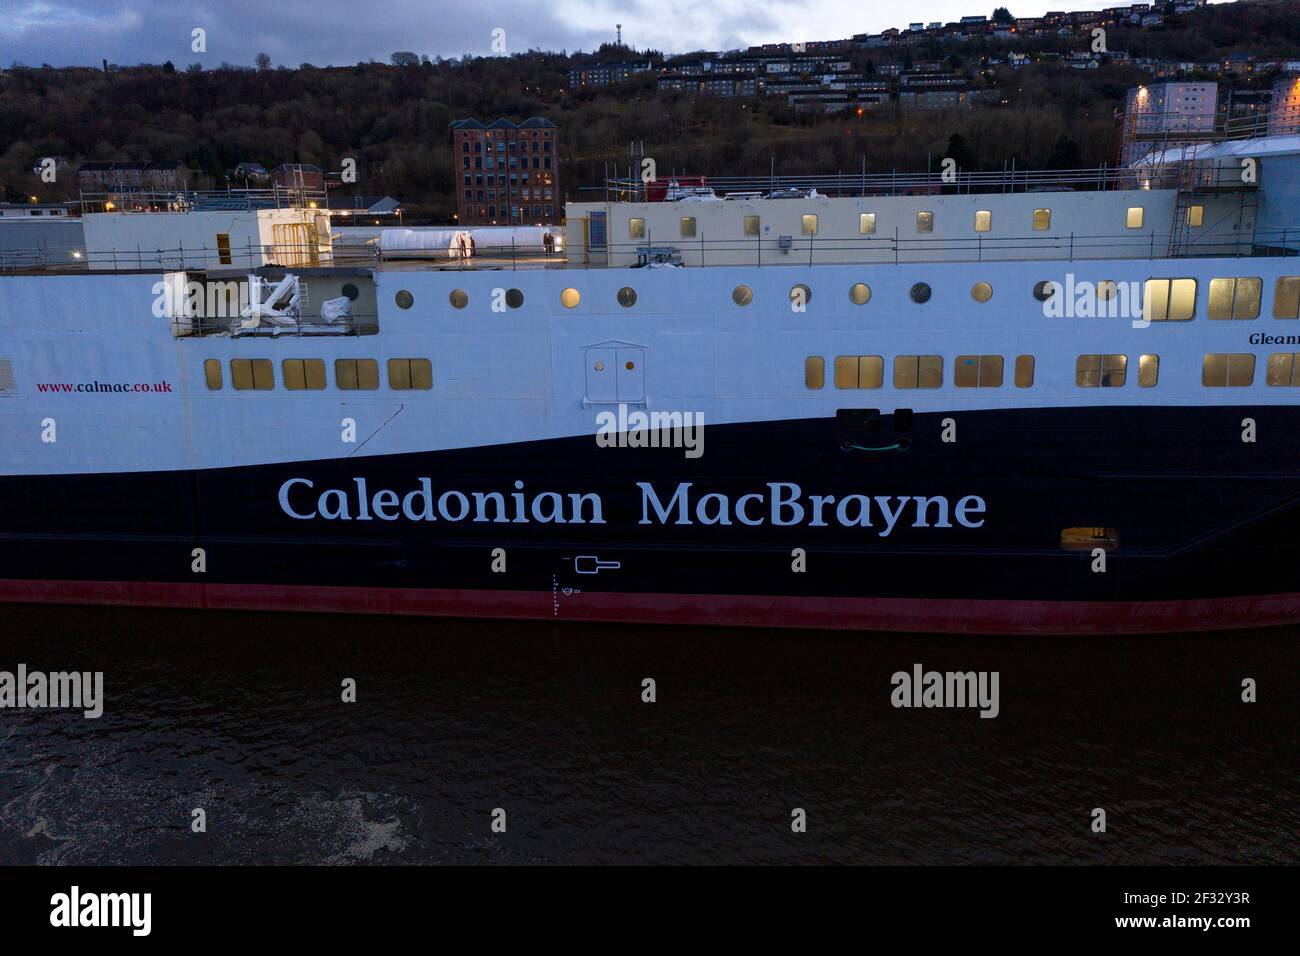 Port Glasgow, Schottland, Großbritannien. März 2021, 14th. Im Bild: Drohnenfotografie Luftaufnahme der Caledonian MacBrayne (CalMac) Fähre namens Glen Sannox, schwimmt im Firth of Clyde noch in der Herstellung. Das jetzt im Besitz der schottischen Regierung befindliche Projekt ist überfällig, wird aber voraussichtlich im kommenden Jahr an Caledonian MacBrayne geliefert werden. COVID19 Abschaltungen haben den bereits überbudgetlichen Fährkosten zusätzliche Kosten von £4,3m hinzugefügt. Quelle: Colin Fisher/Alamy Live News Stockfoto